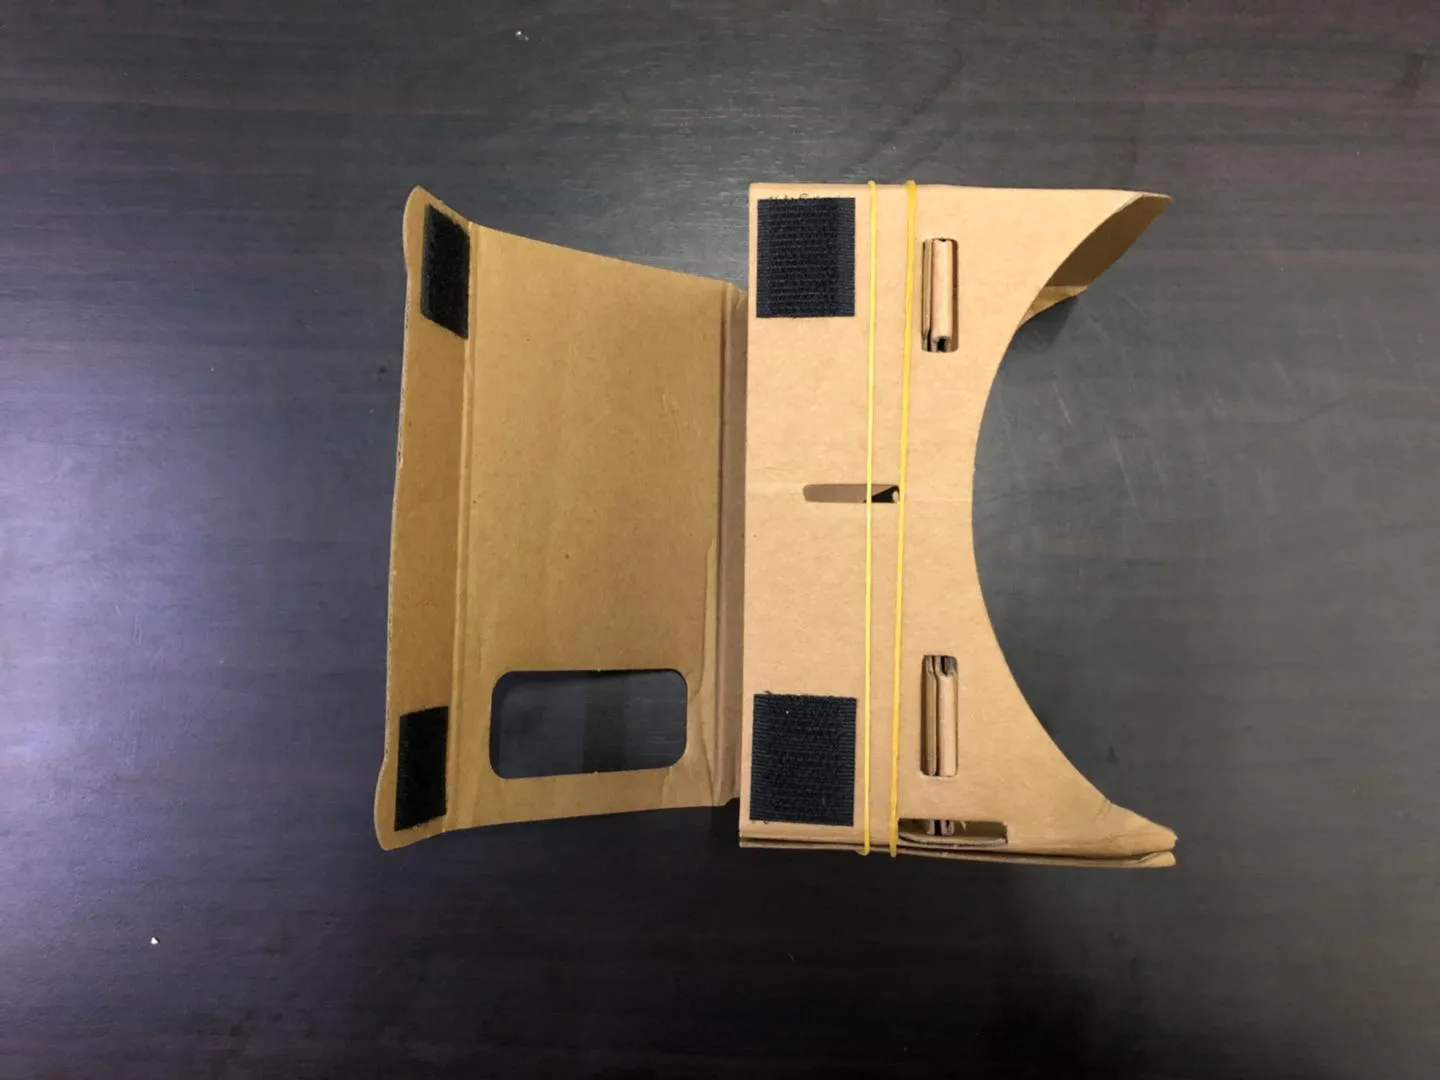 MODELOS 3D GRATUITOS MODELOS 3D VISTOS VR VR DIY Google Cardboard Telefone celular Realidade virtual de papelão não oficial VR Toolkit 3D Glasses CCA1785 B-XY